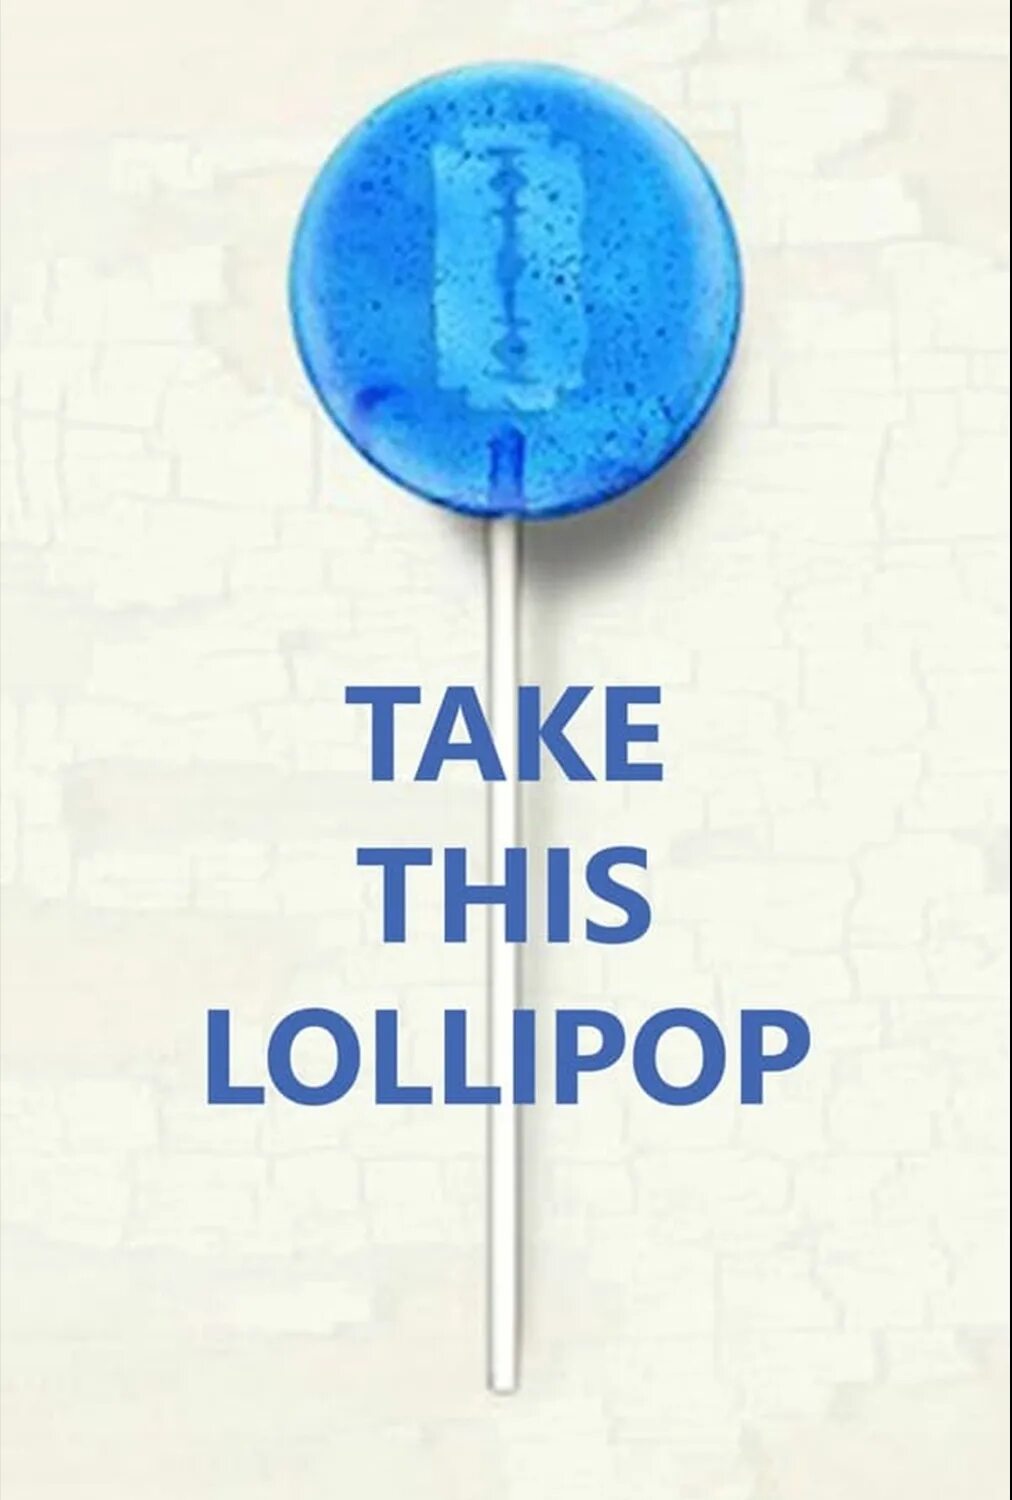 Тейк ком. Take this Lollipop. Take this Lollipop игра. TAKEHISLOLIPOP. Take this Lollipop 2020.